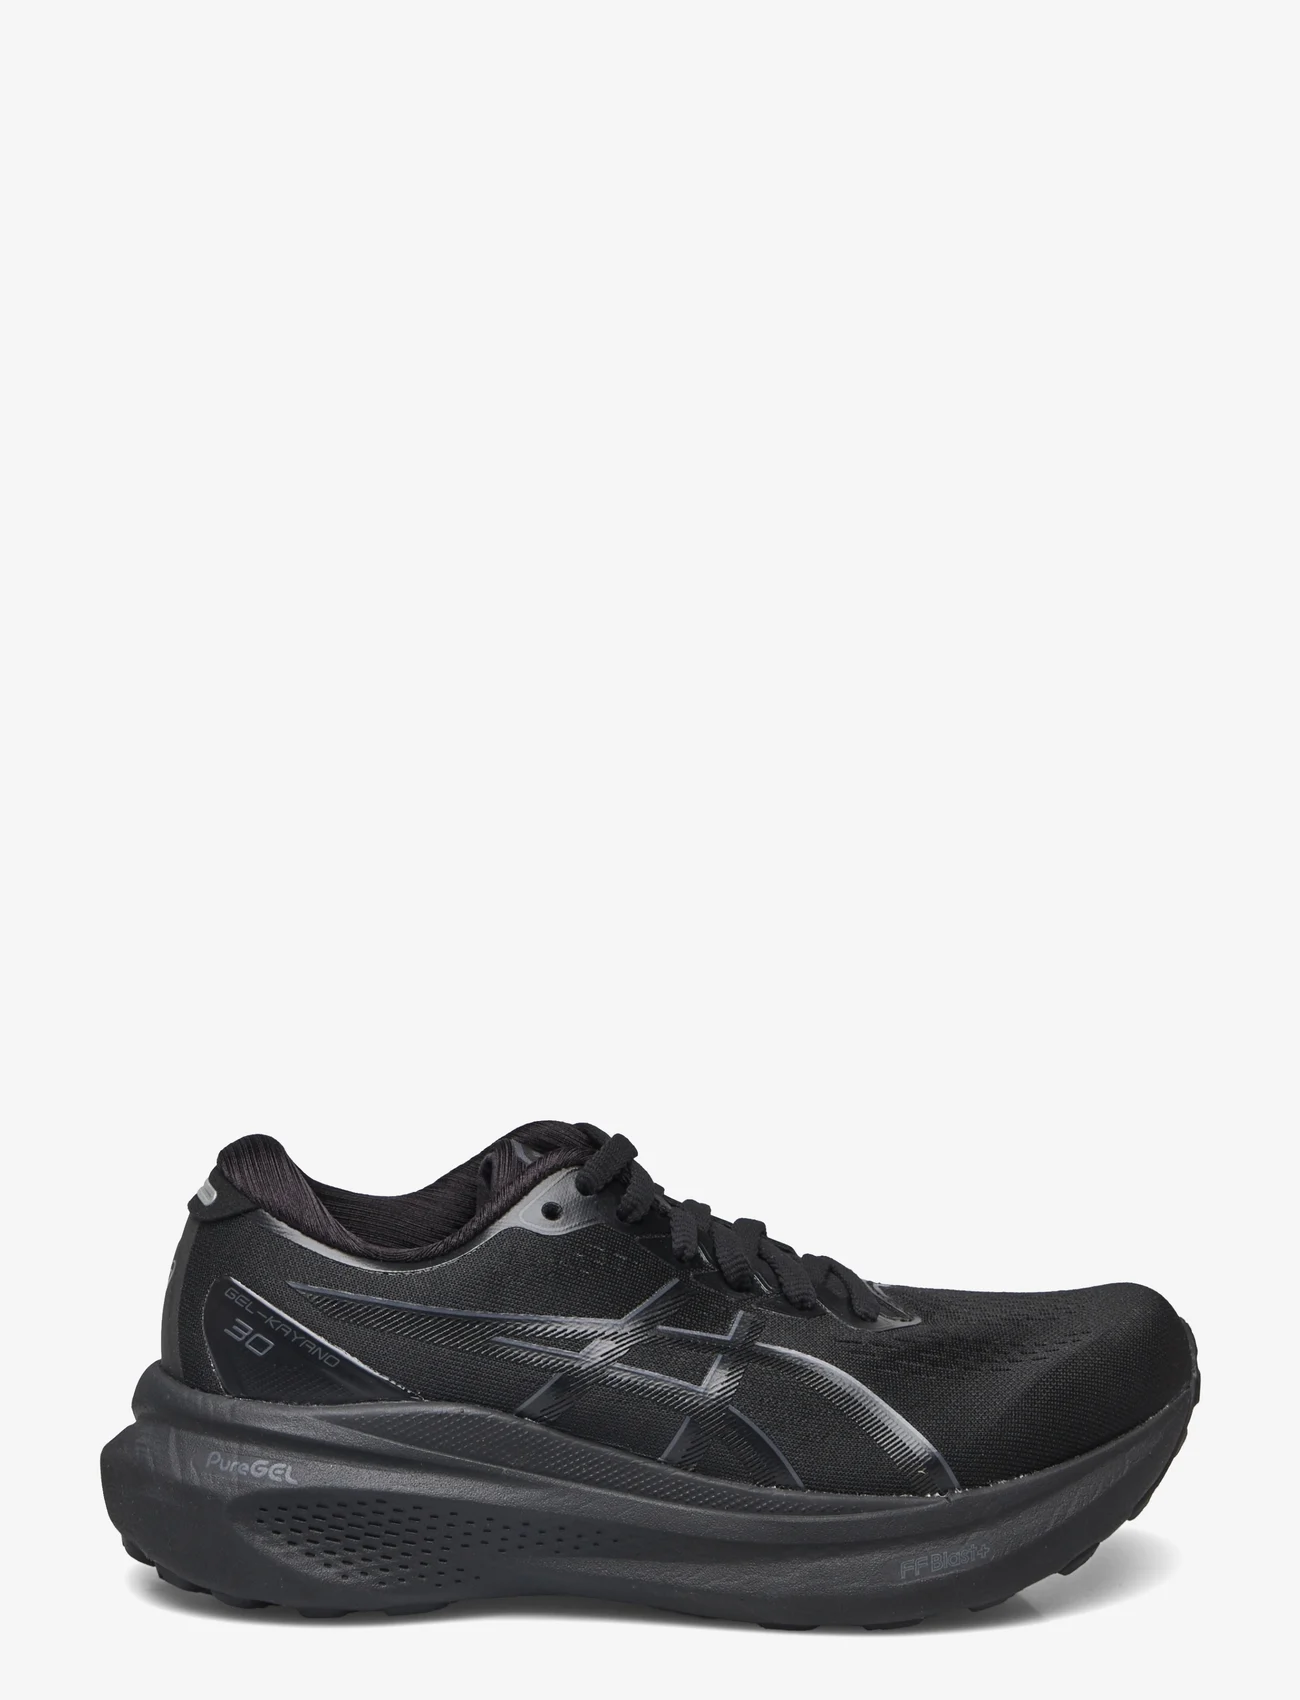 Asics - GEL-KAYANO 30 - shoes - black/black - 1